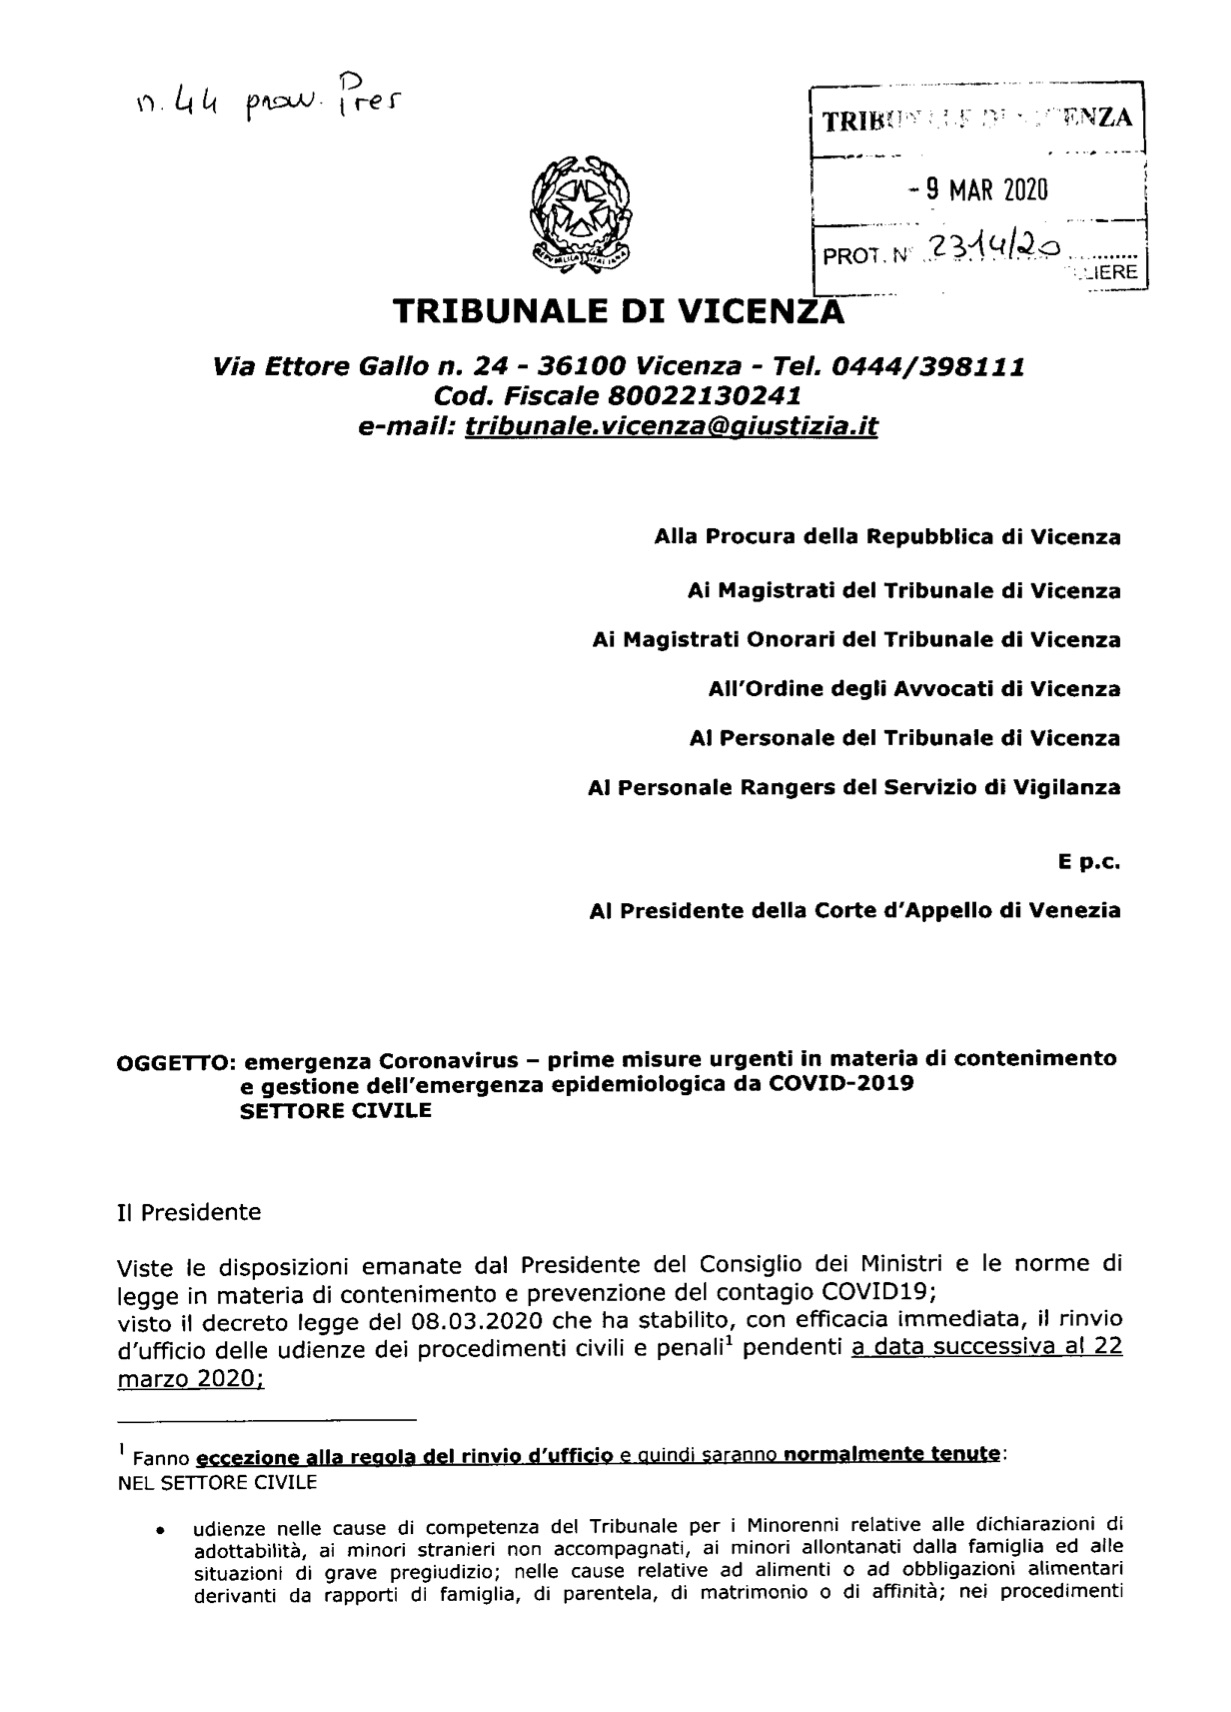 Provvedimento Presidente Tribunale di Vicenza 9.03.2020 - Misure contenimento emergenza sanitaria - Settore civile